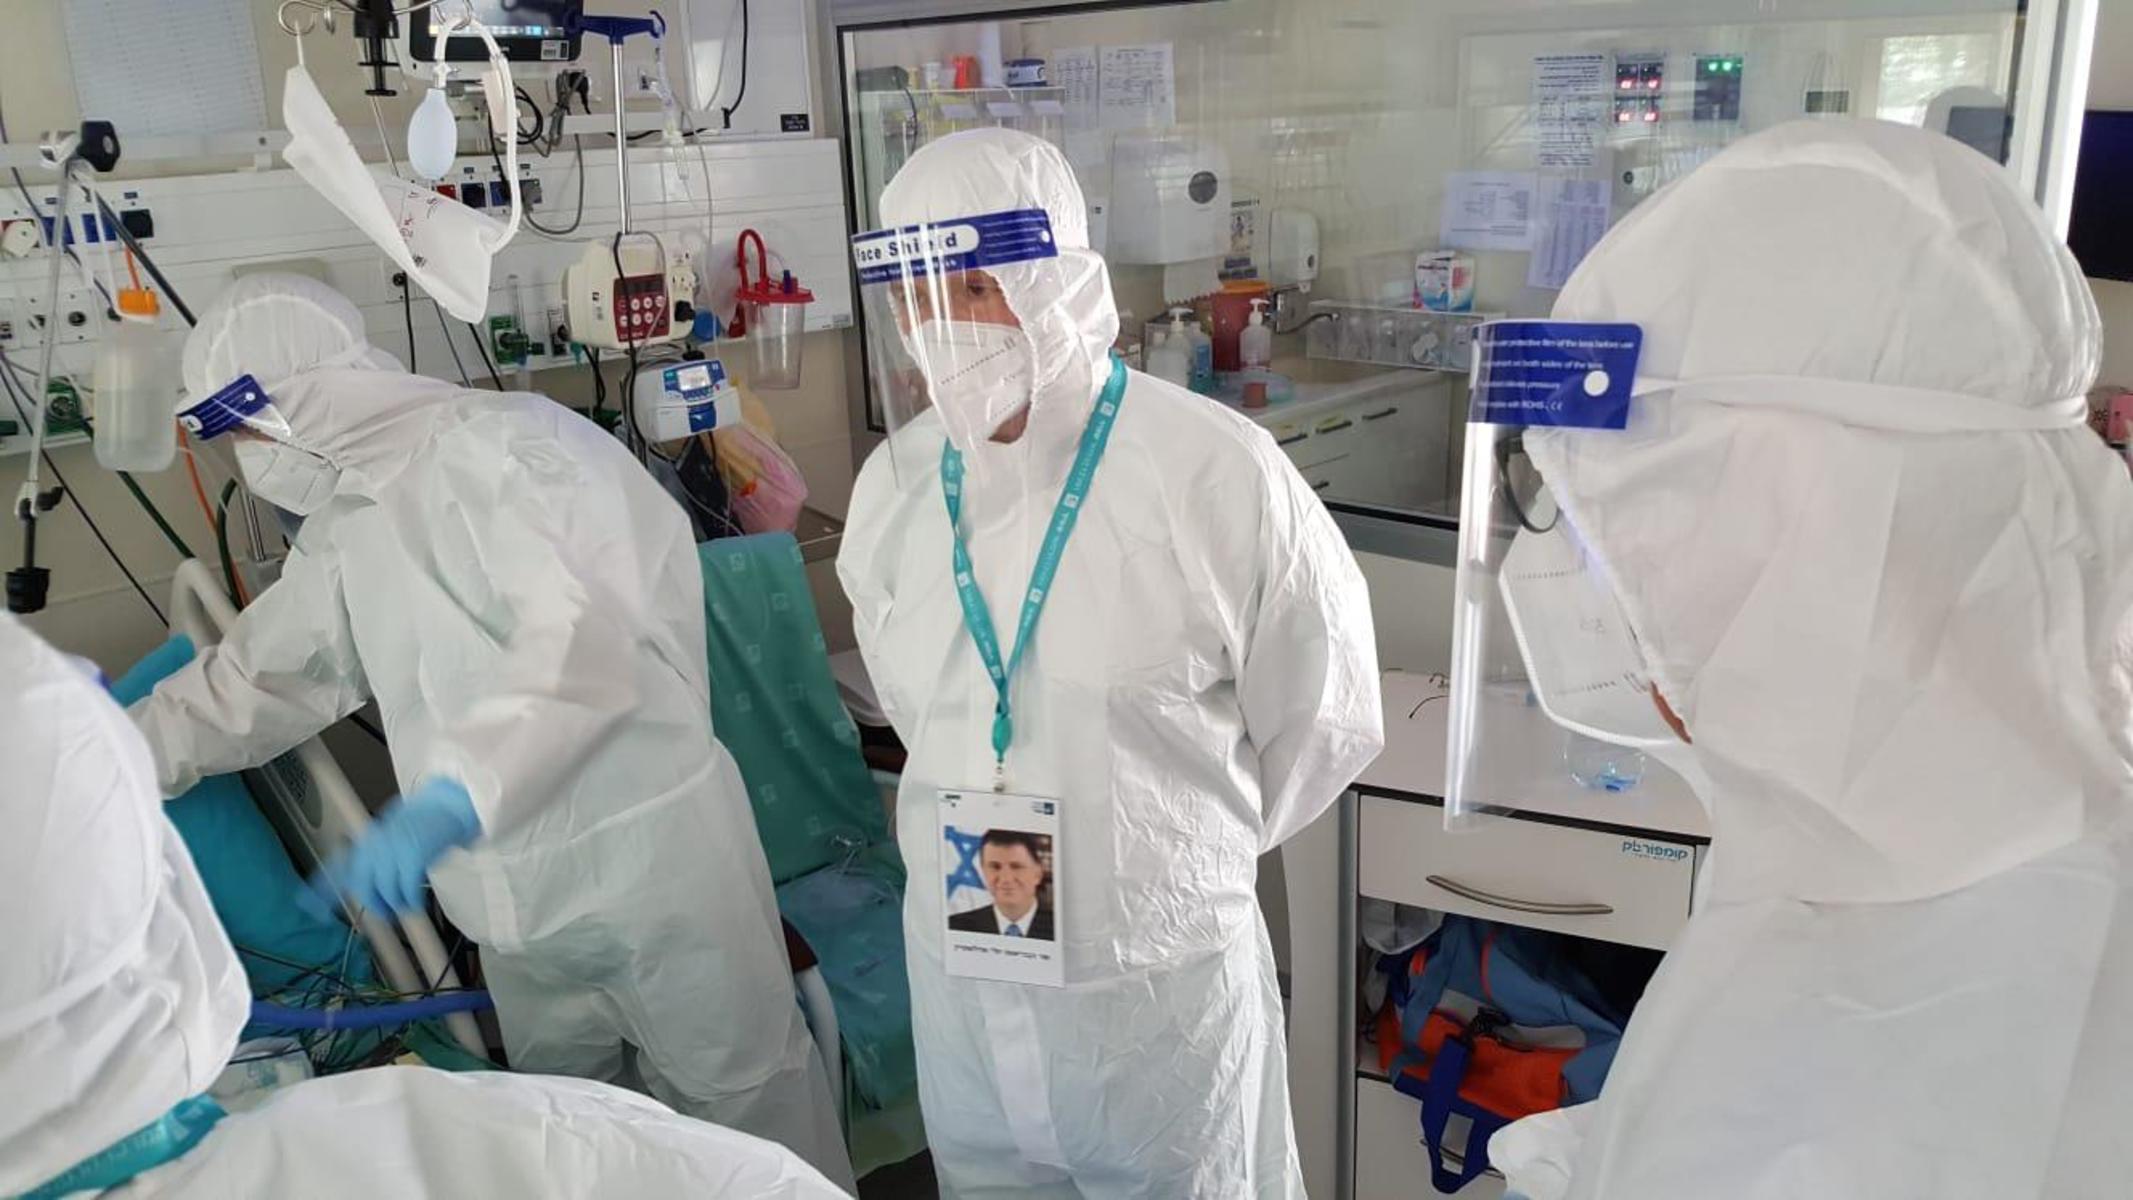 Министр здравоохранения Эдельштейн впервые решился войти в коронавирусное отделение